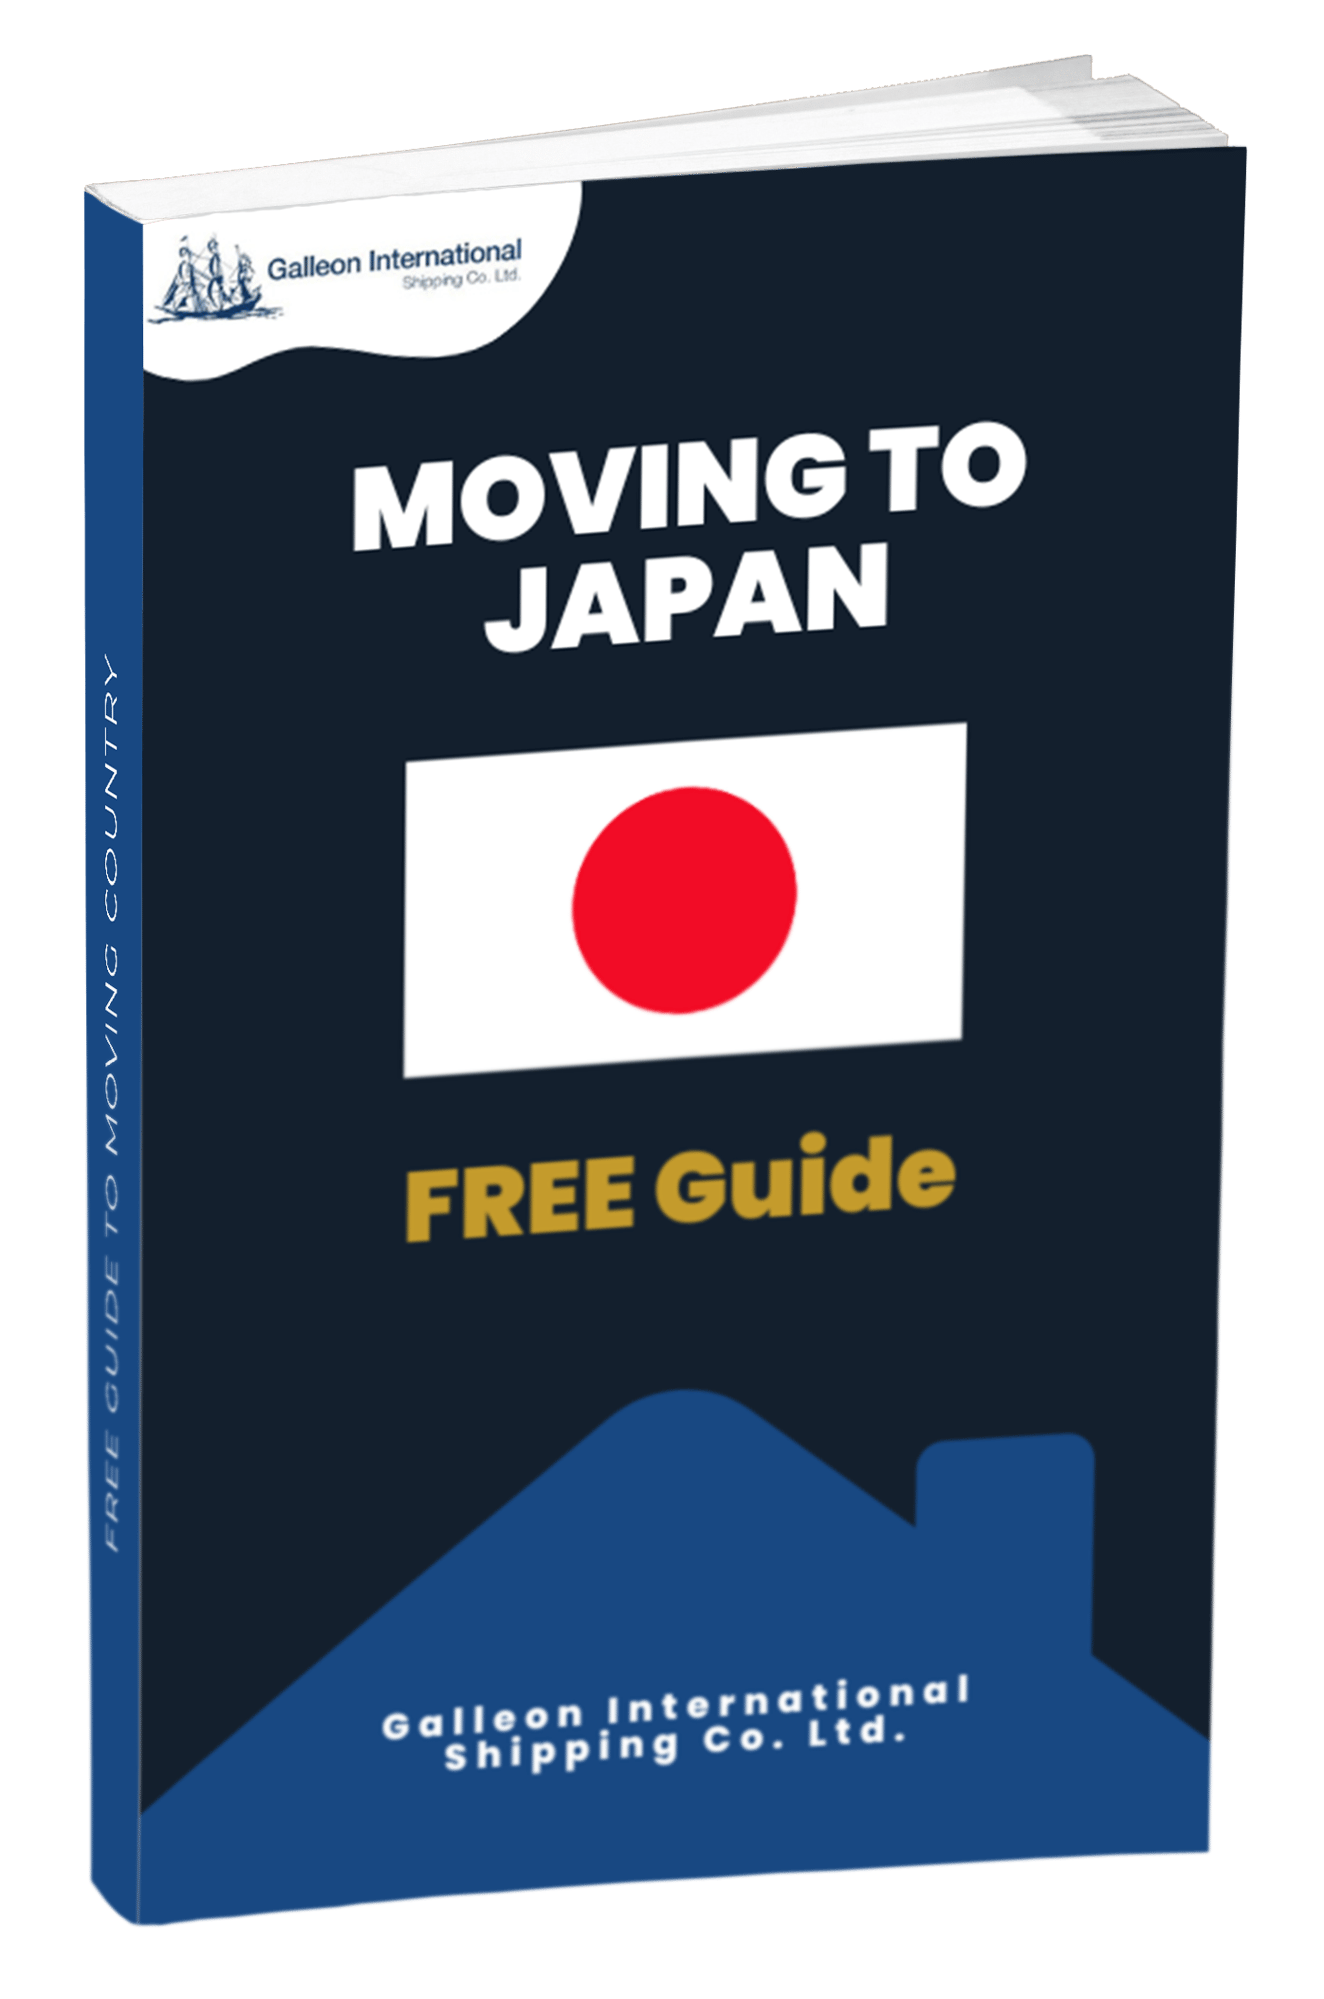 Japan Guide